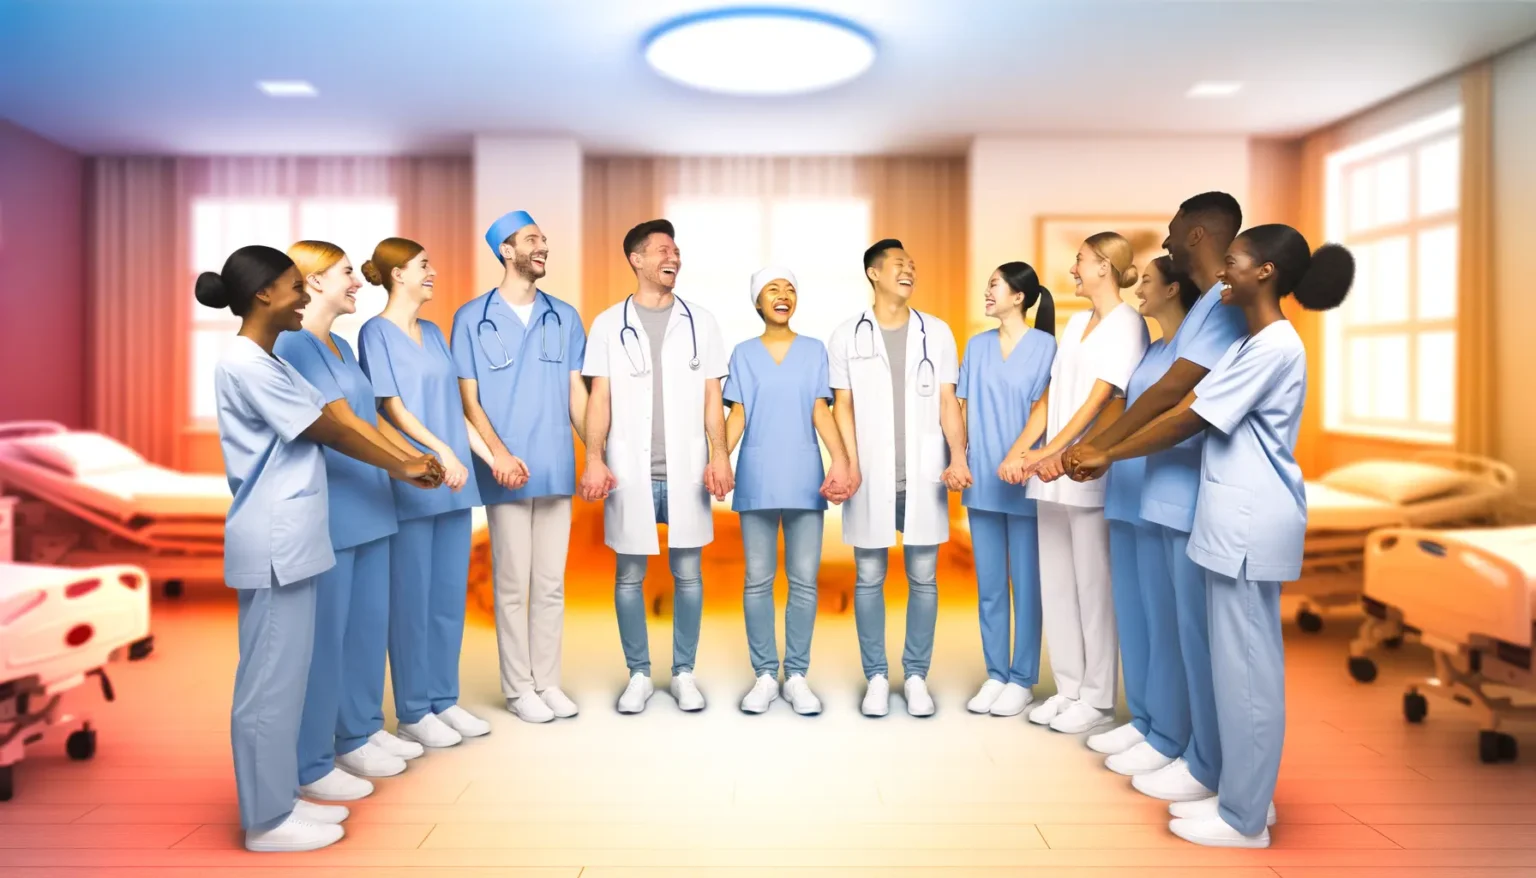 Eine Gruppe lächelnder Krankenpfleger und Ärzte in blauer Berufskleidung, die sich in einem Krankenhausflur gegenüberstehen und die Hände voneinander halten, wobei Krankenhausbetten und leuchtende Fenster im Hintergrund zu sehen sind.